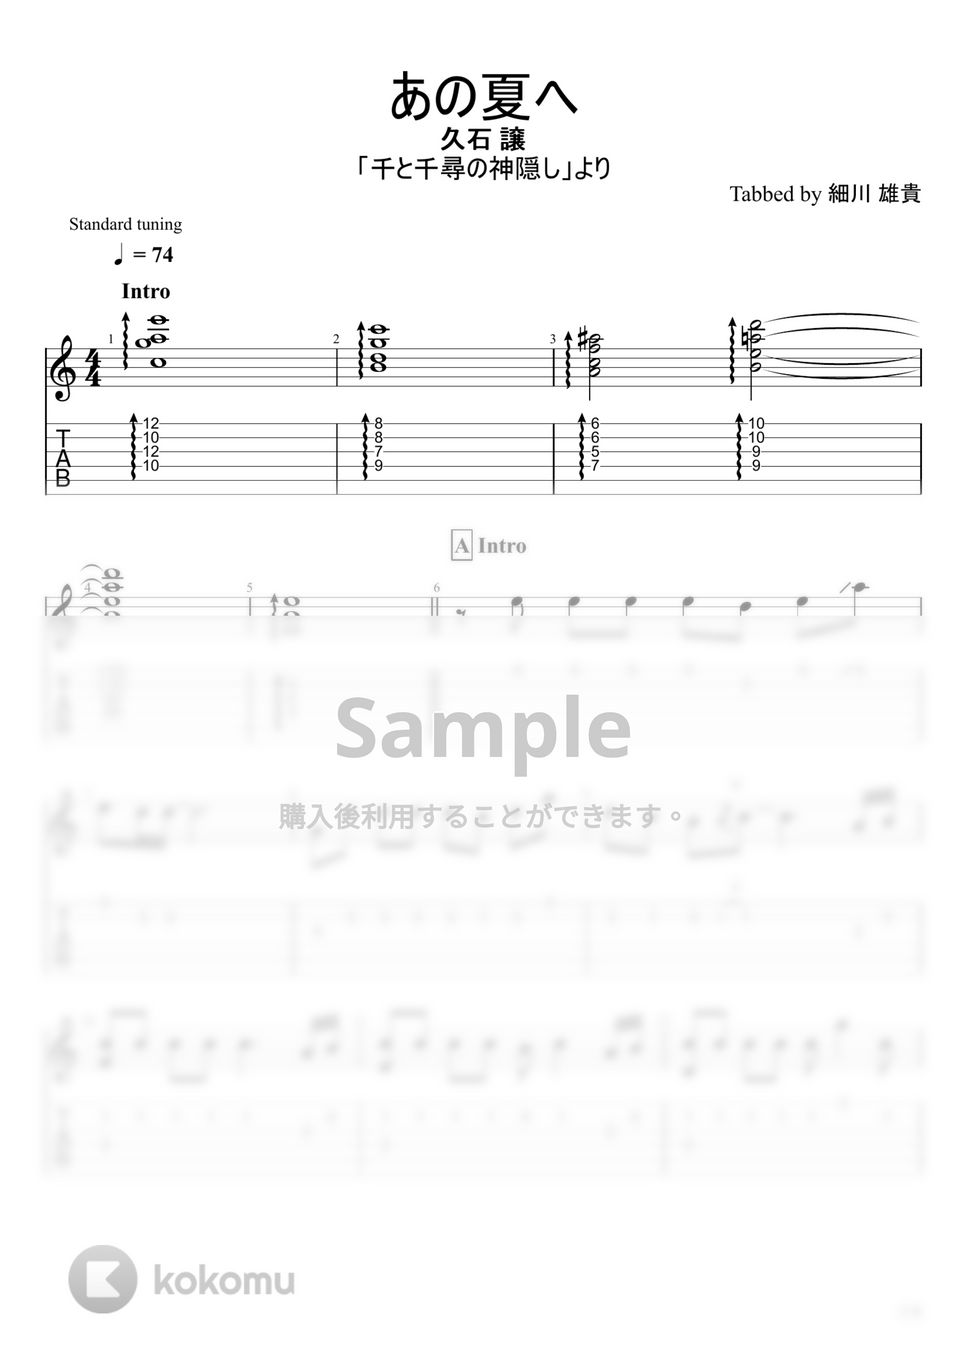 千と千尋の神隠し - あの夏へ (ソロギター) by u3danchou